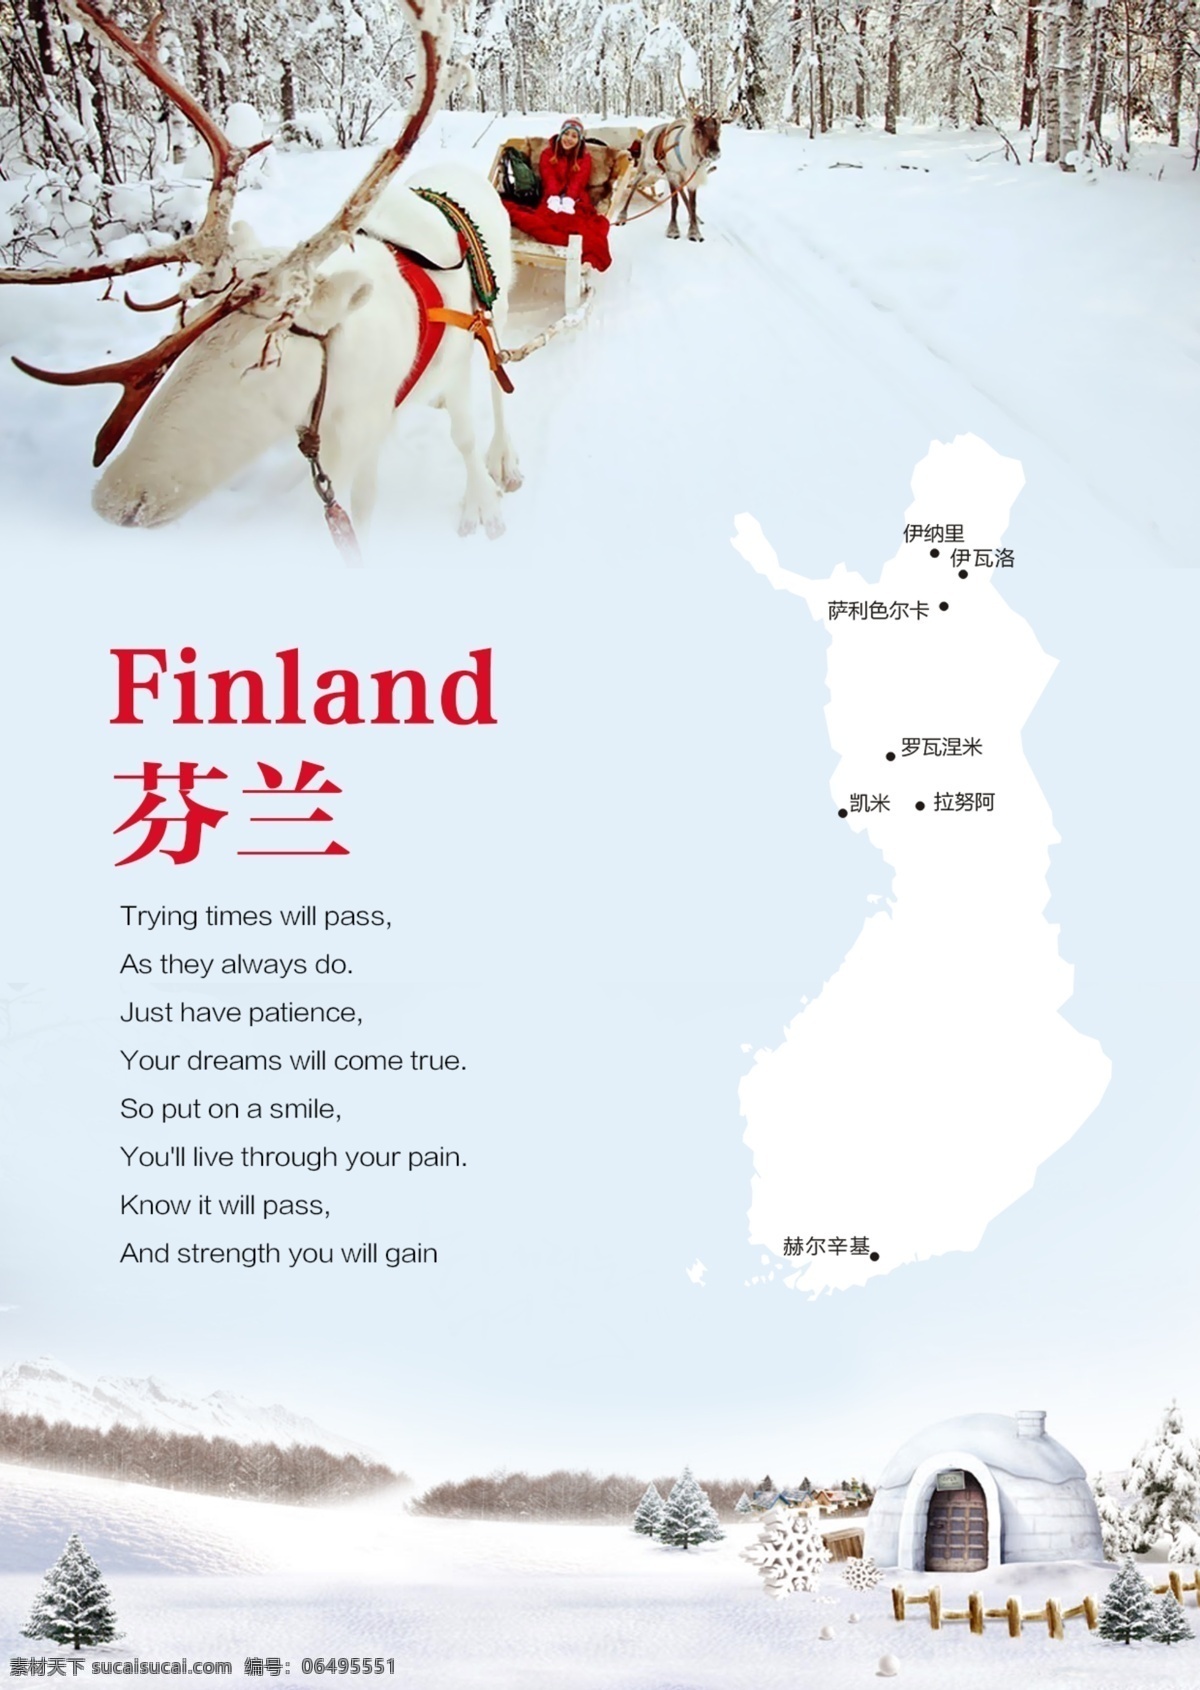 芬兰 芬兰旅游 圣诞老人村 芬兰雪景 芬兰麋鹿 麋鹿 麋鹿拉车 雪原 芬兰圣诞村